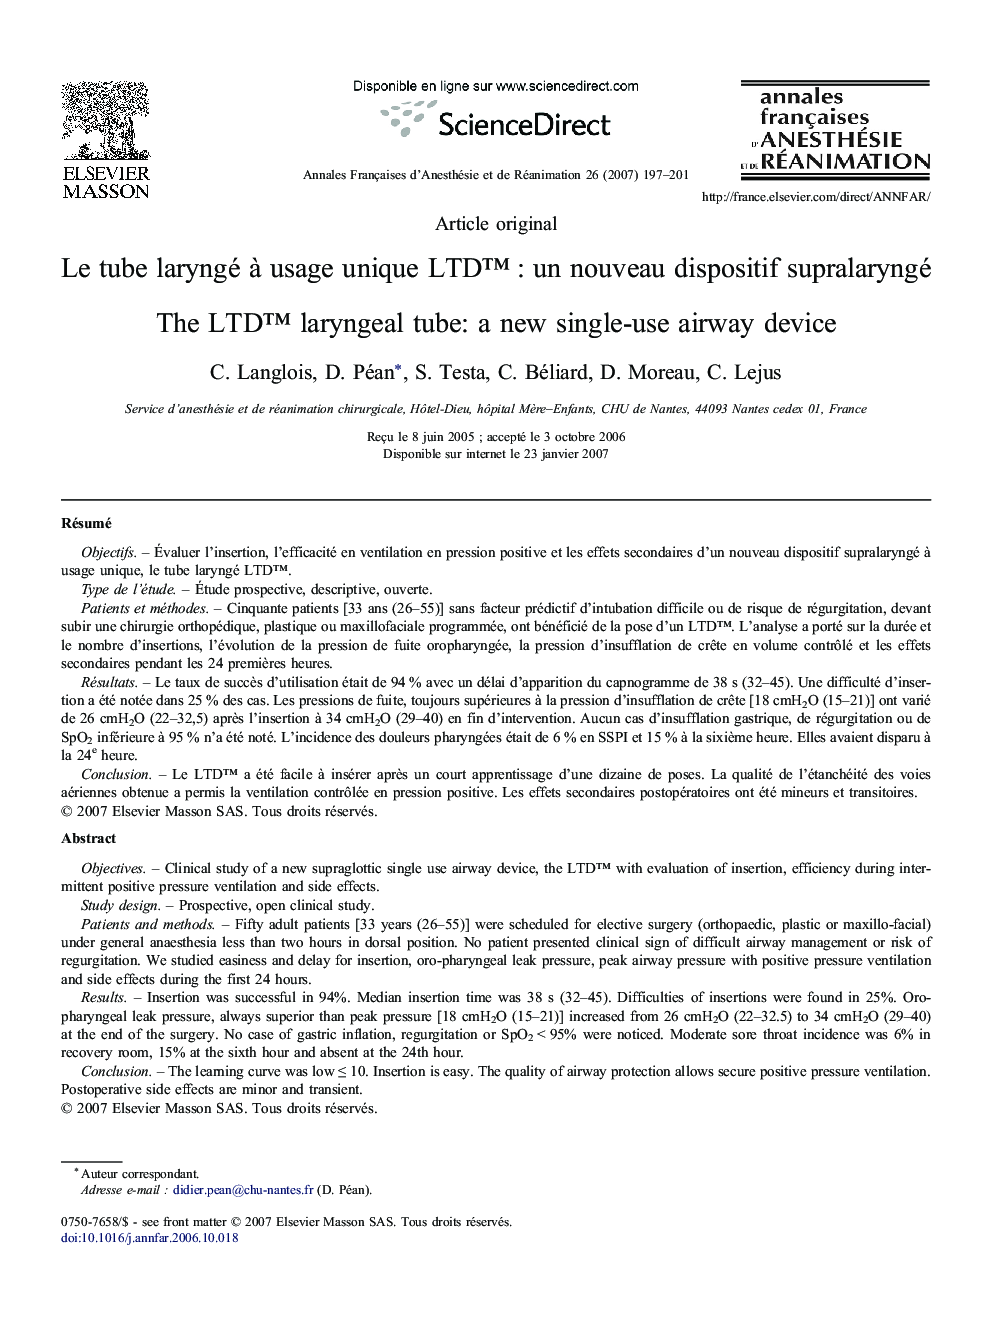 Le tube laryngé à usage unique LTD™ : un nouveau dispositif supralaryngé